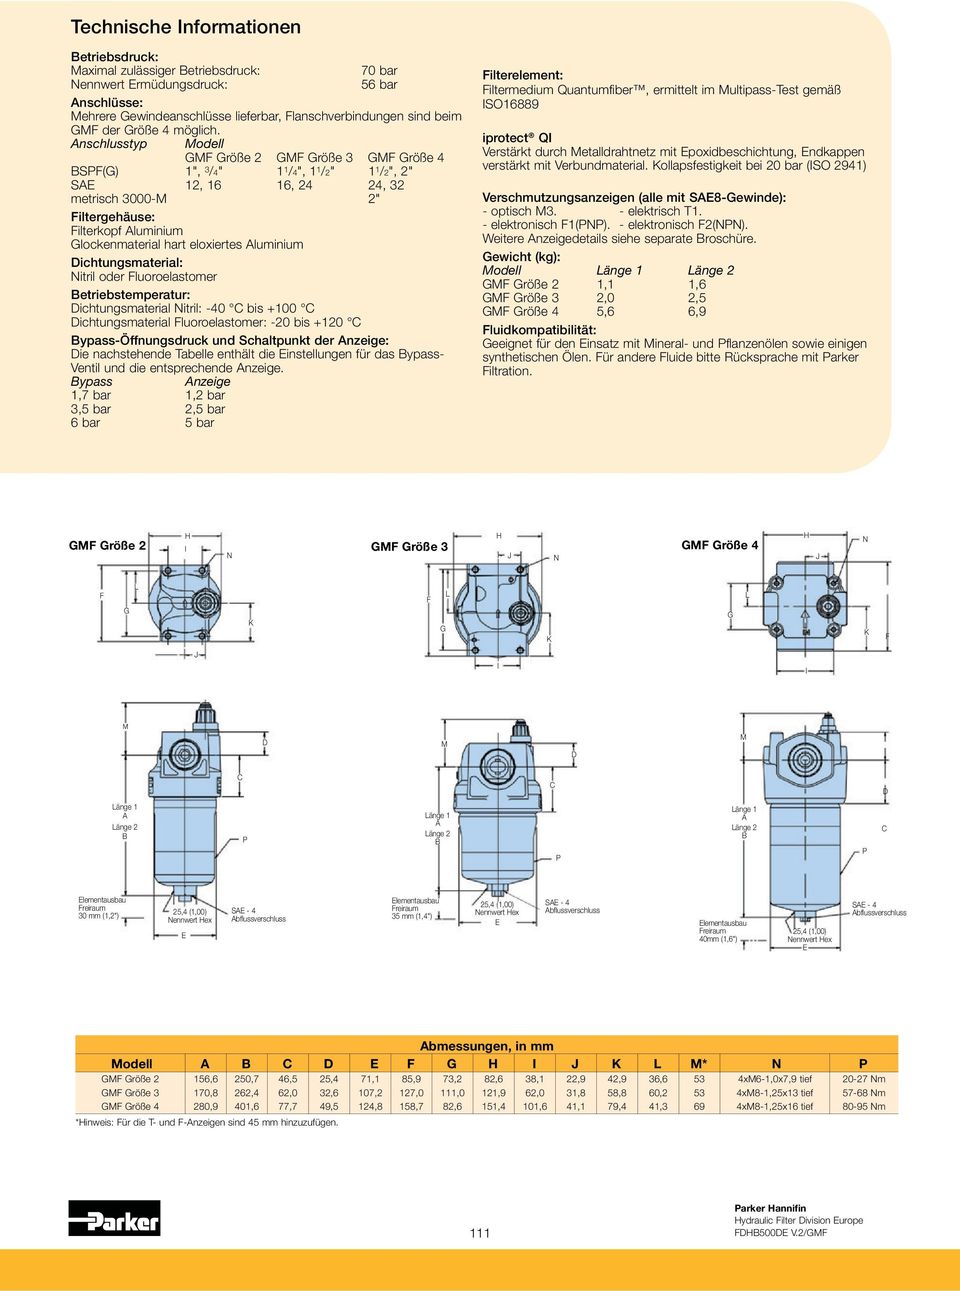 Anschlusstyp Modell GMF Größe GMF Größe 3 GMF Größe 4 BSPF(G) ", 3 /4" /4", /" /", " SAE, 6 6, 4 4, 3 metrisch 3M " Filtergehäuse: Filterkopf Aluminium Glockenmaterial hart eloxiertes Aluminium